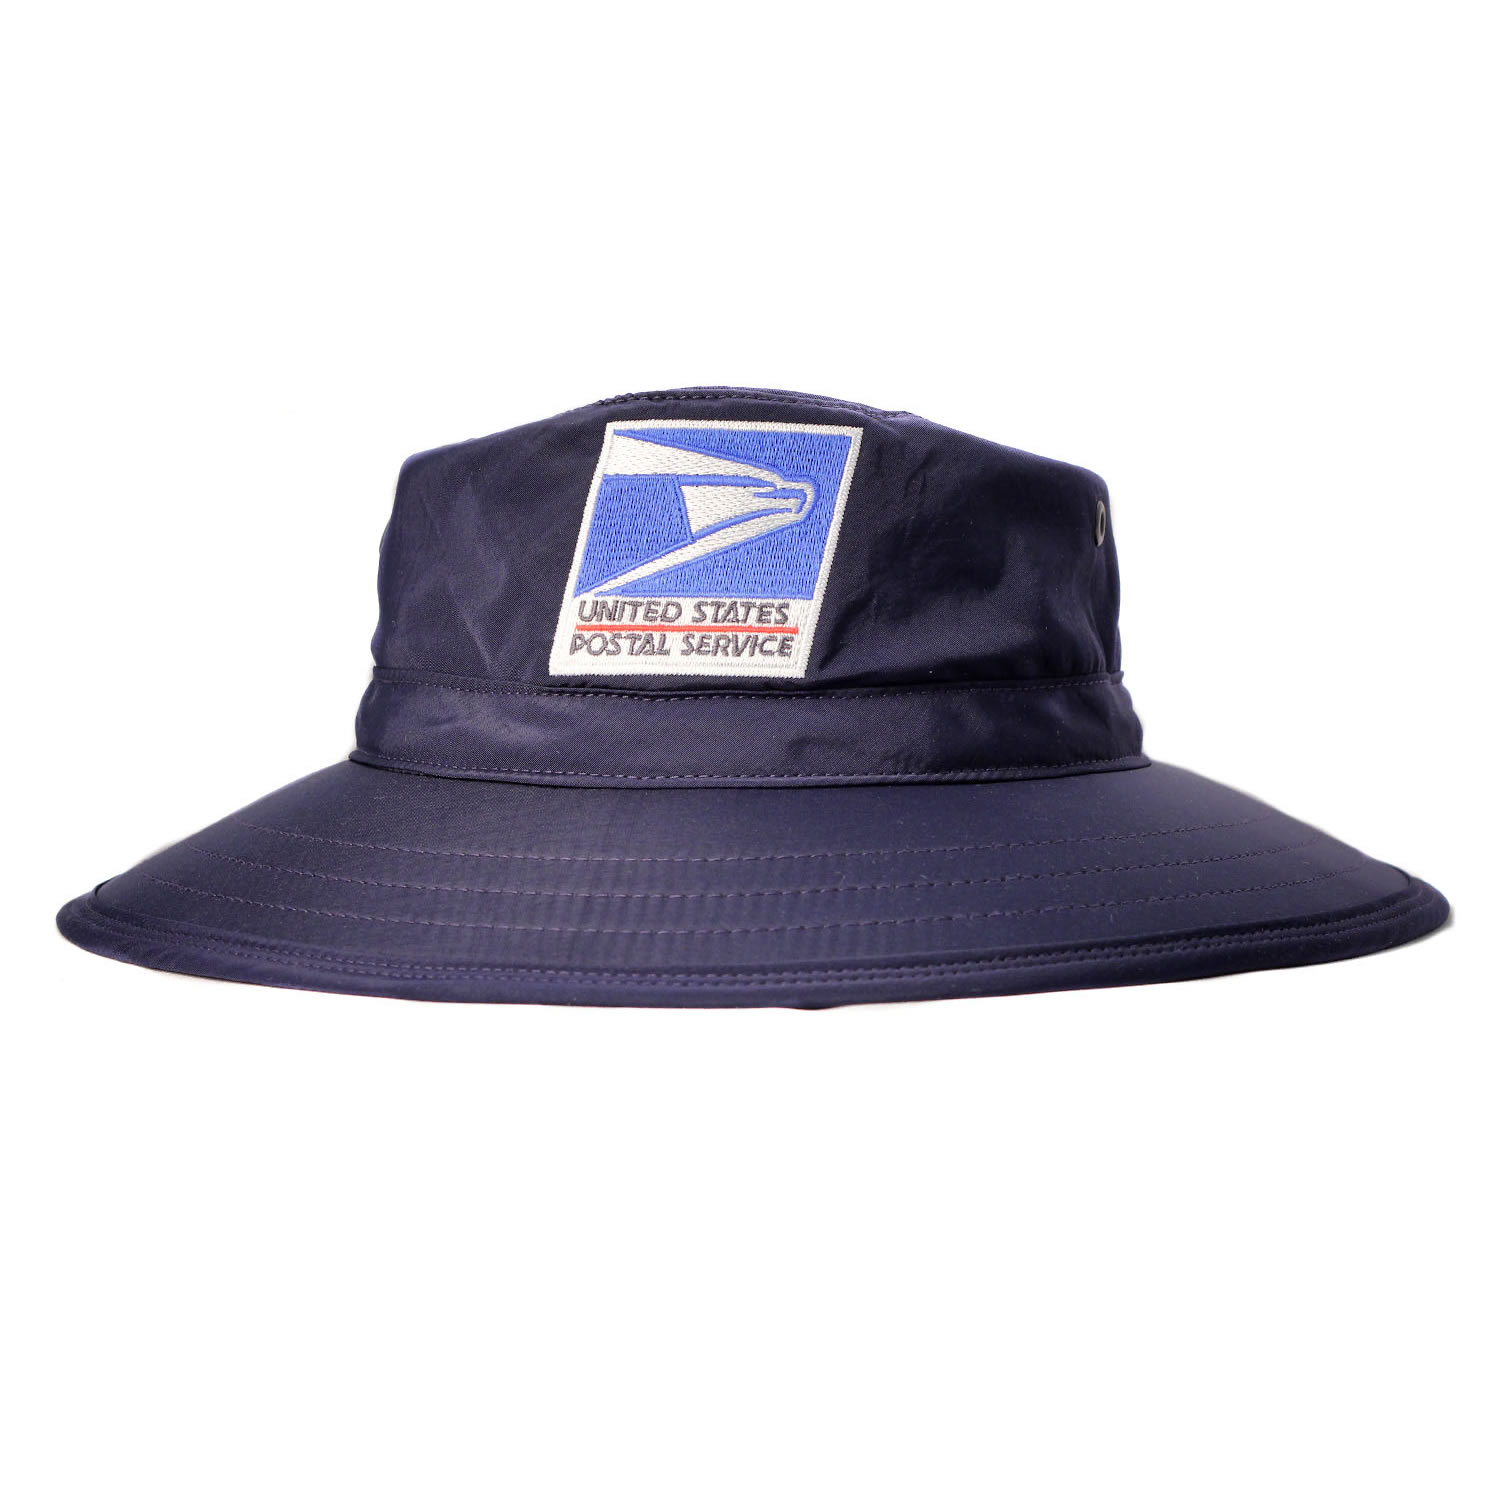 Postal Uniform Sun Hat for Letter Carriers